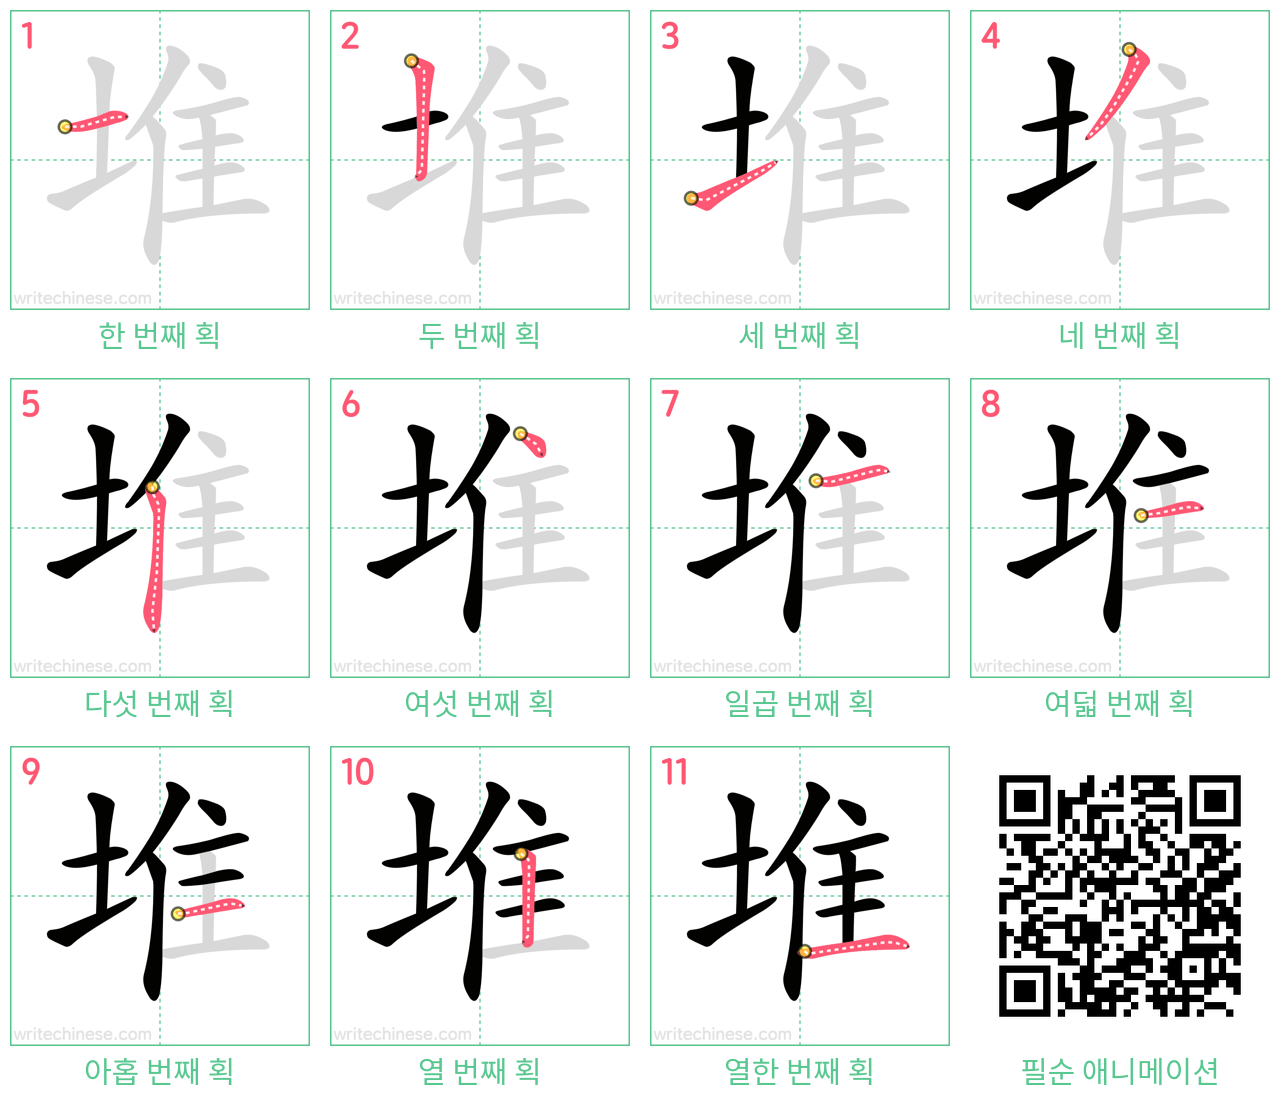 堆 step-by-step stroke order diagrams